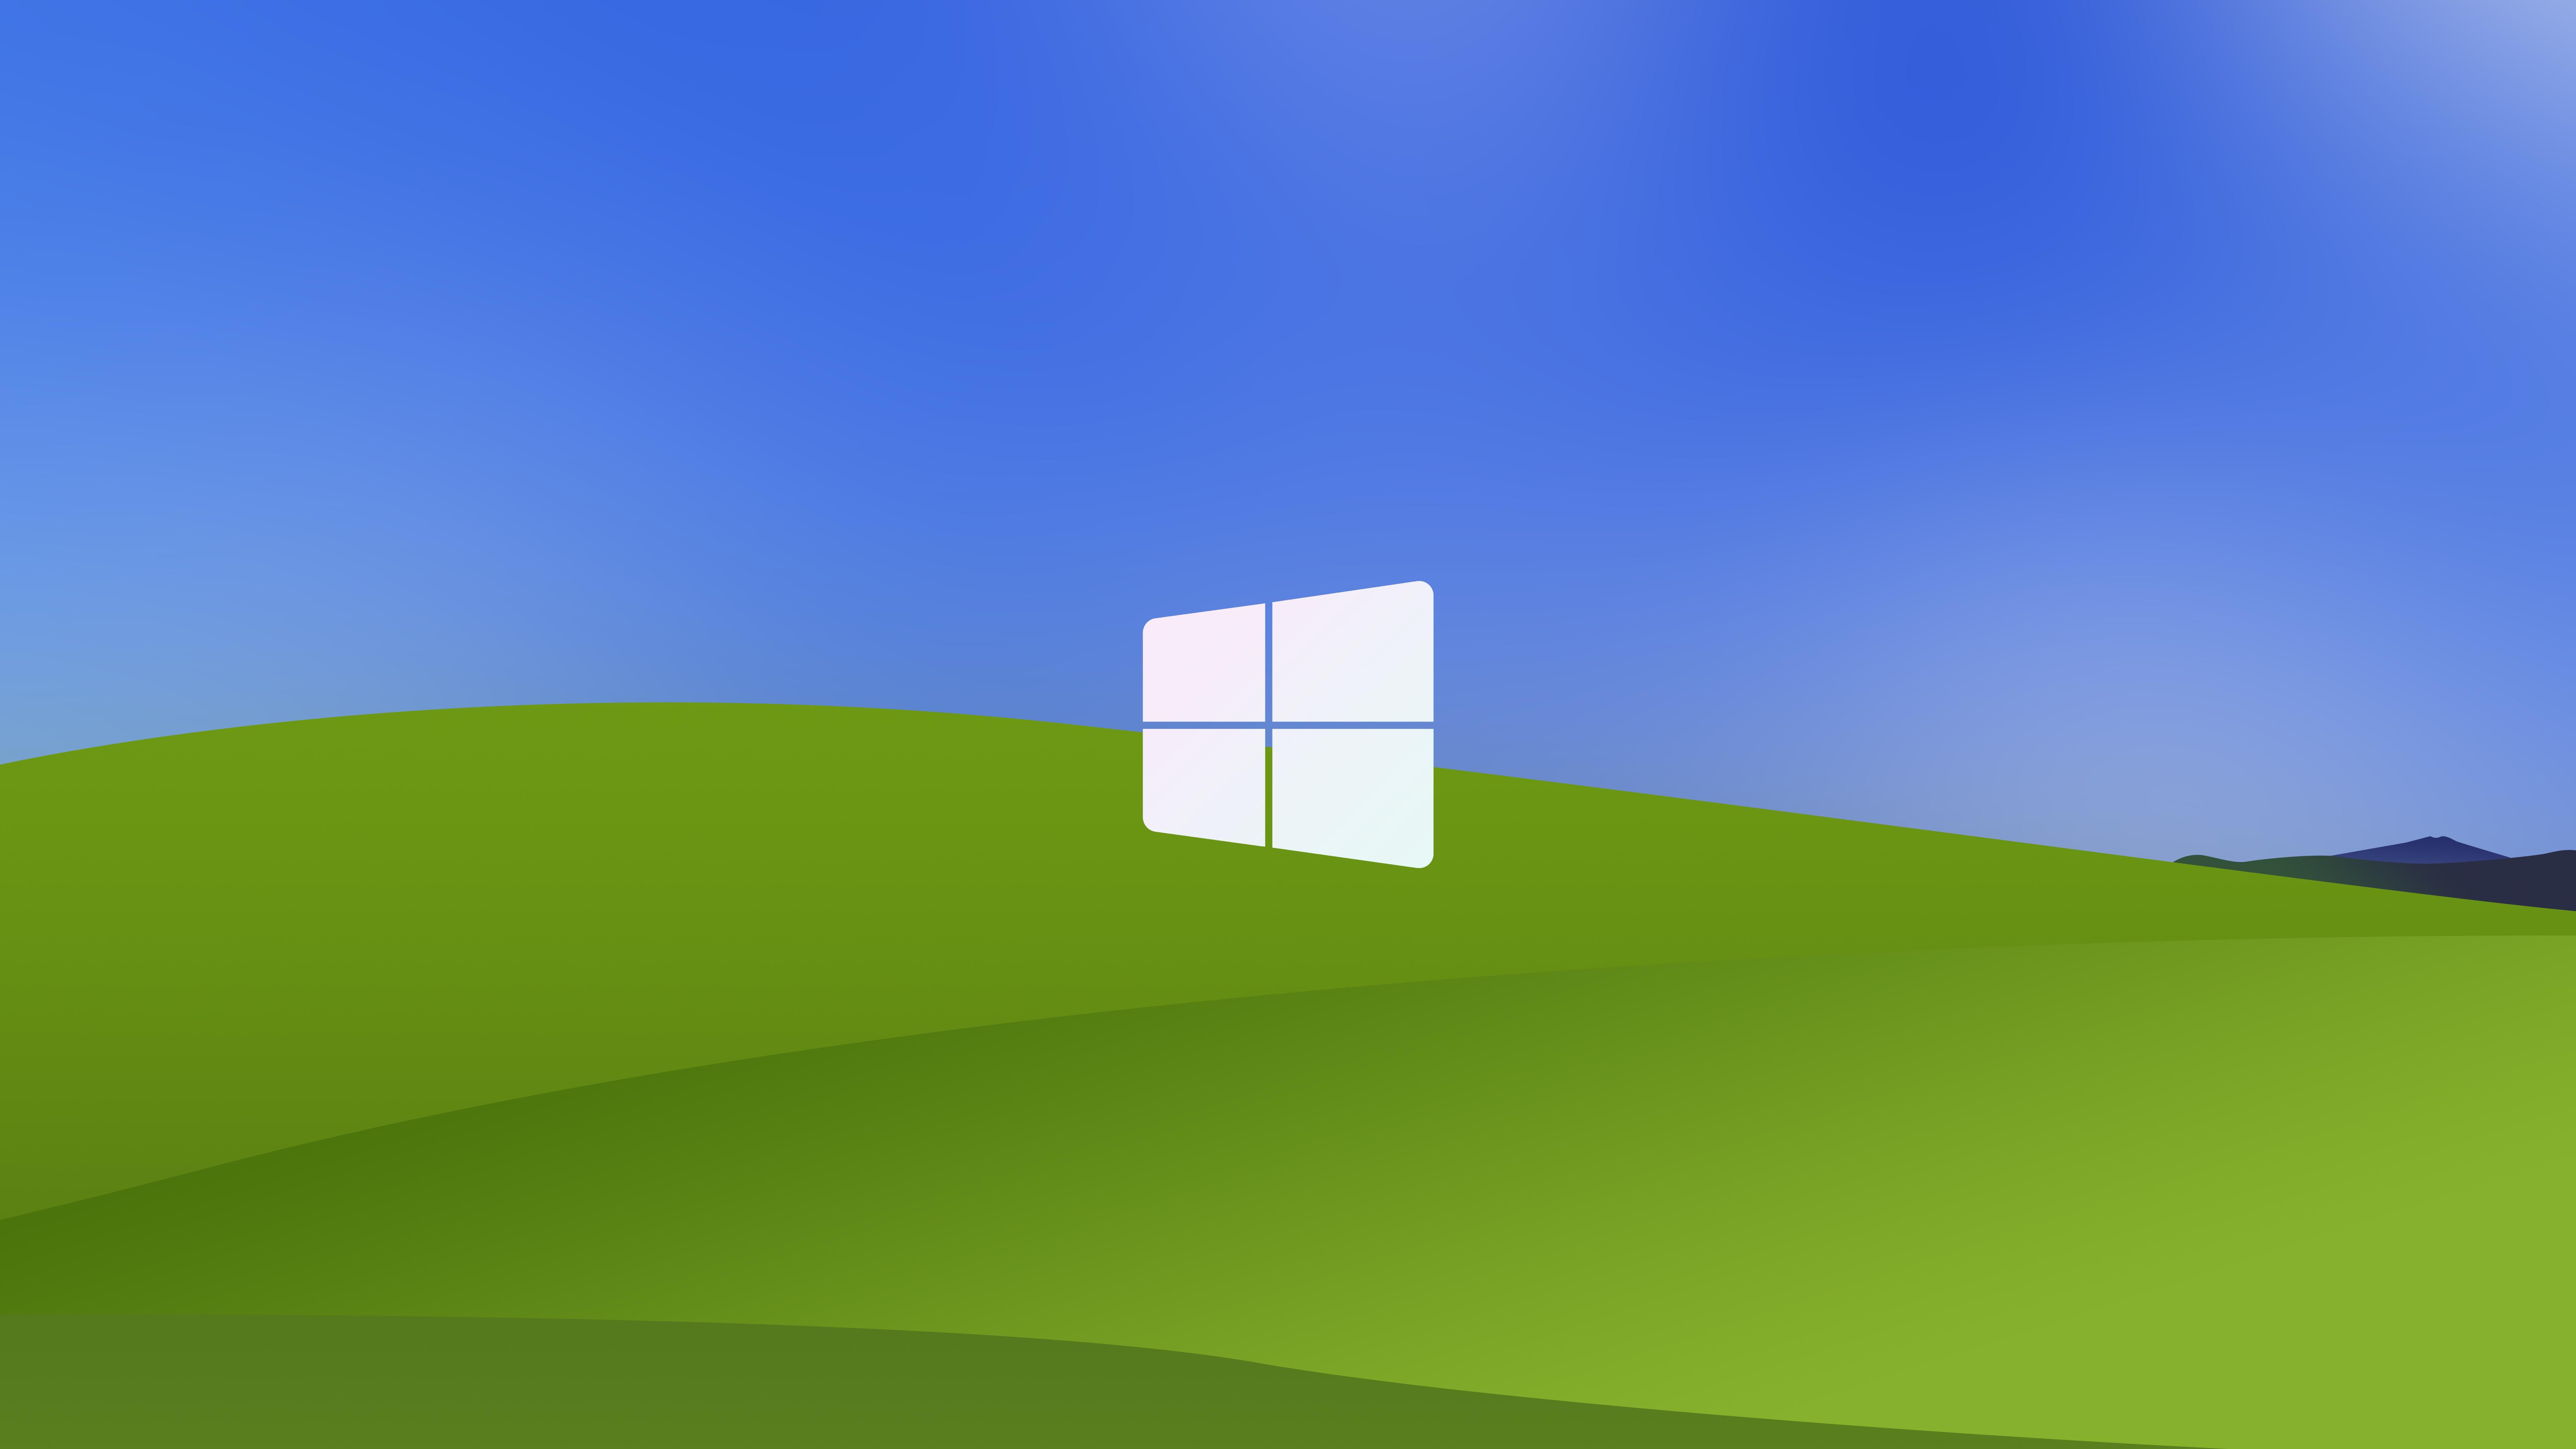 Обои Windows XP